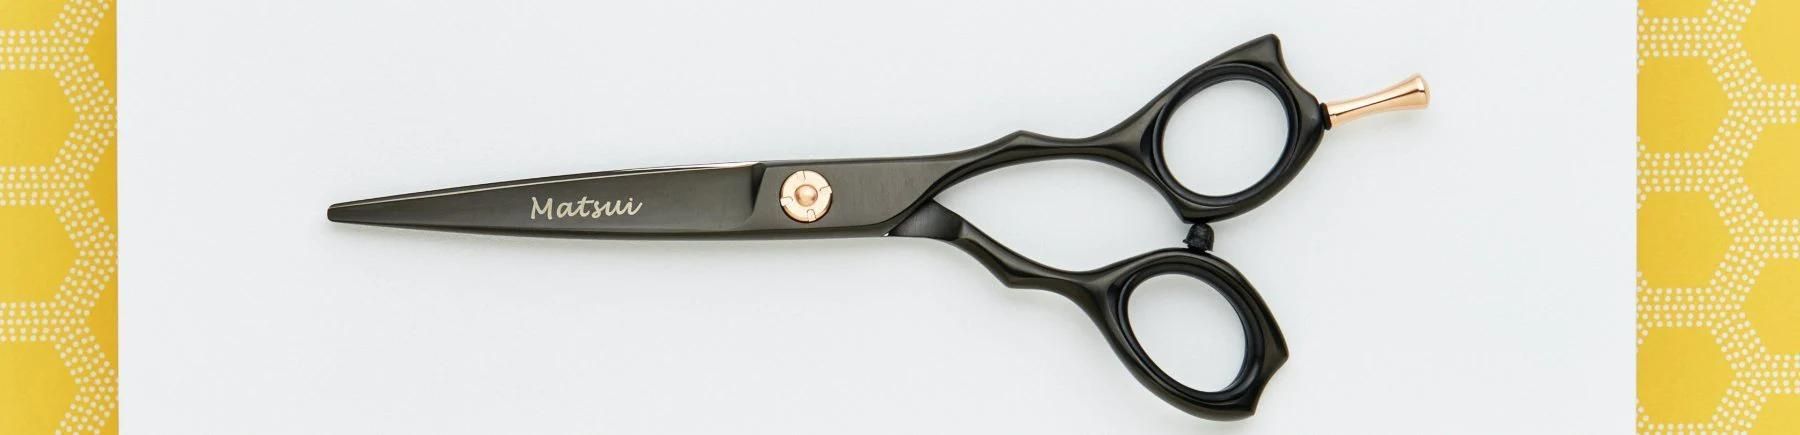 Matte Black Scissors.